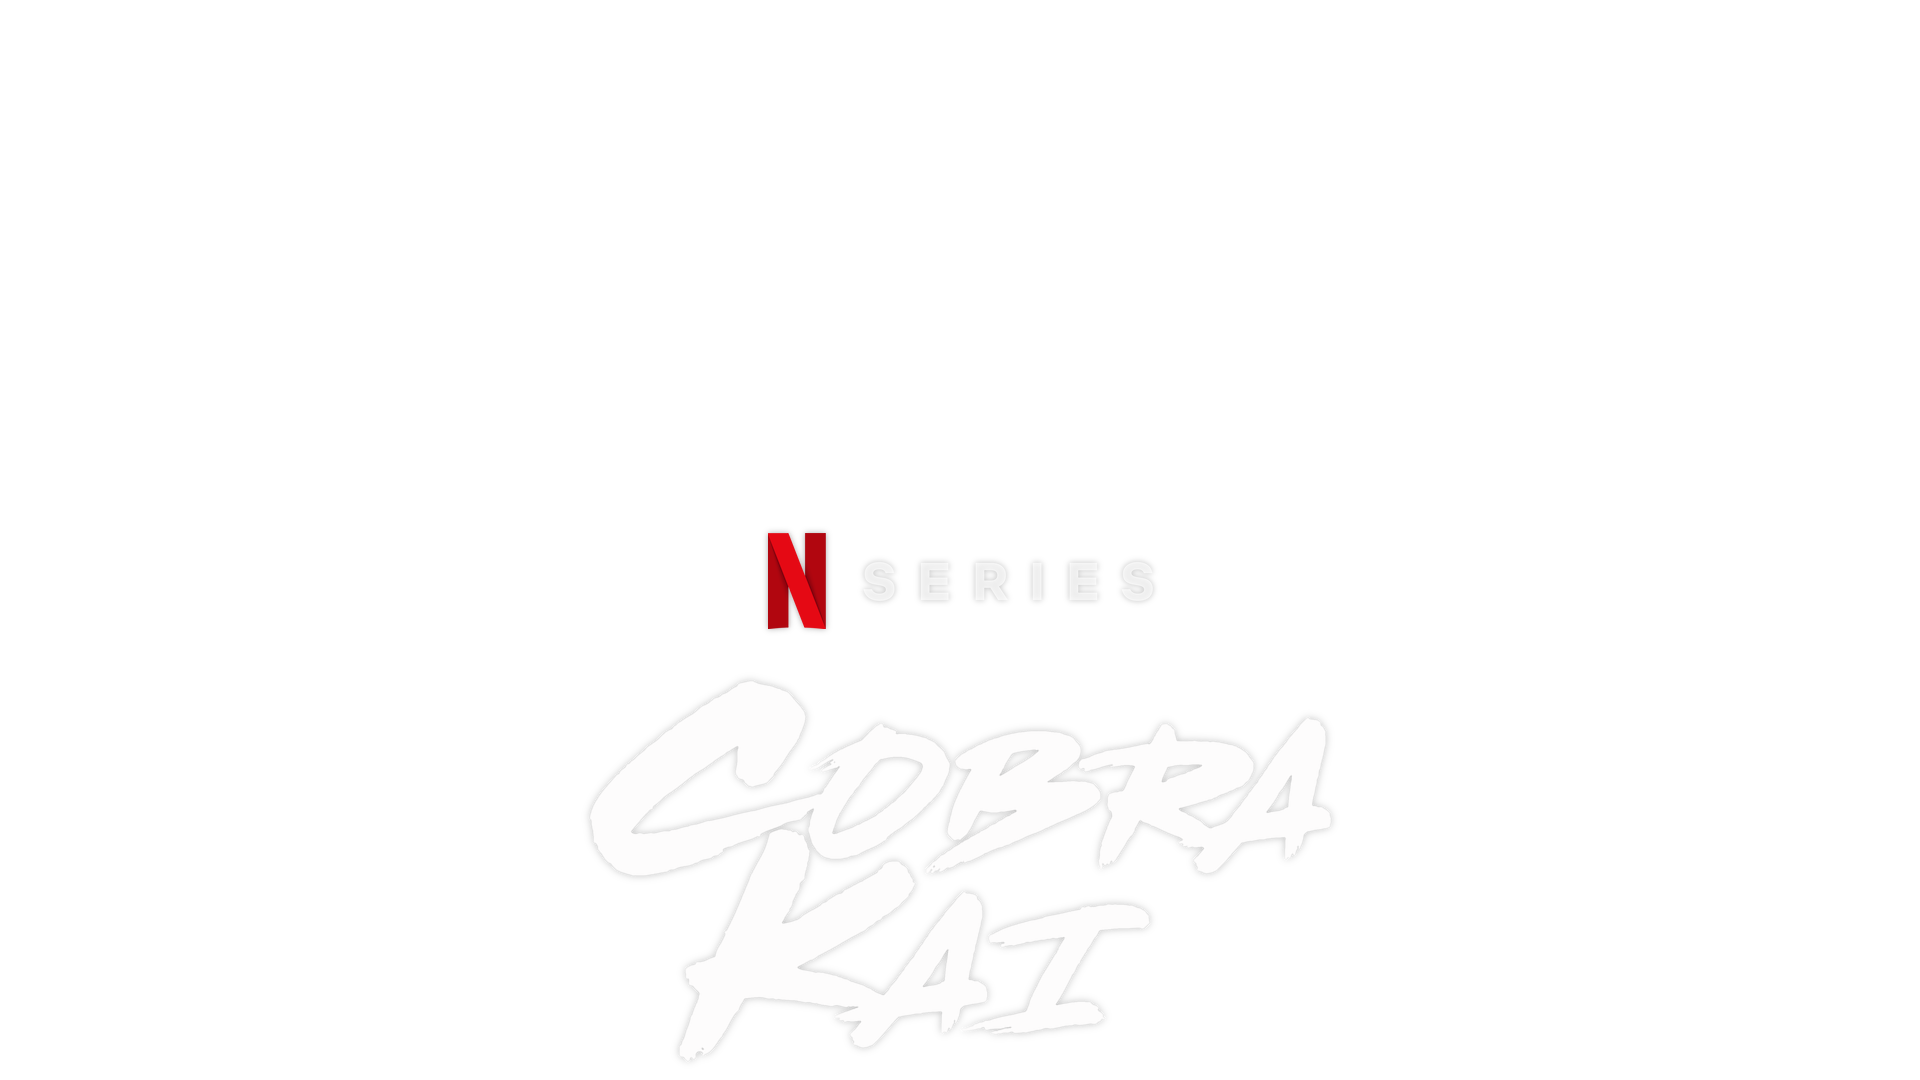 Everything You Need to Know About 'Cobra Kai' Season 2 - Netflix Tudum